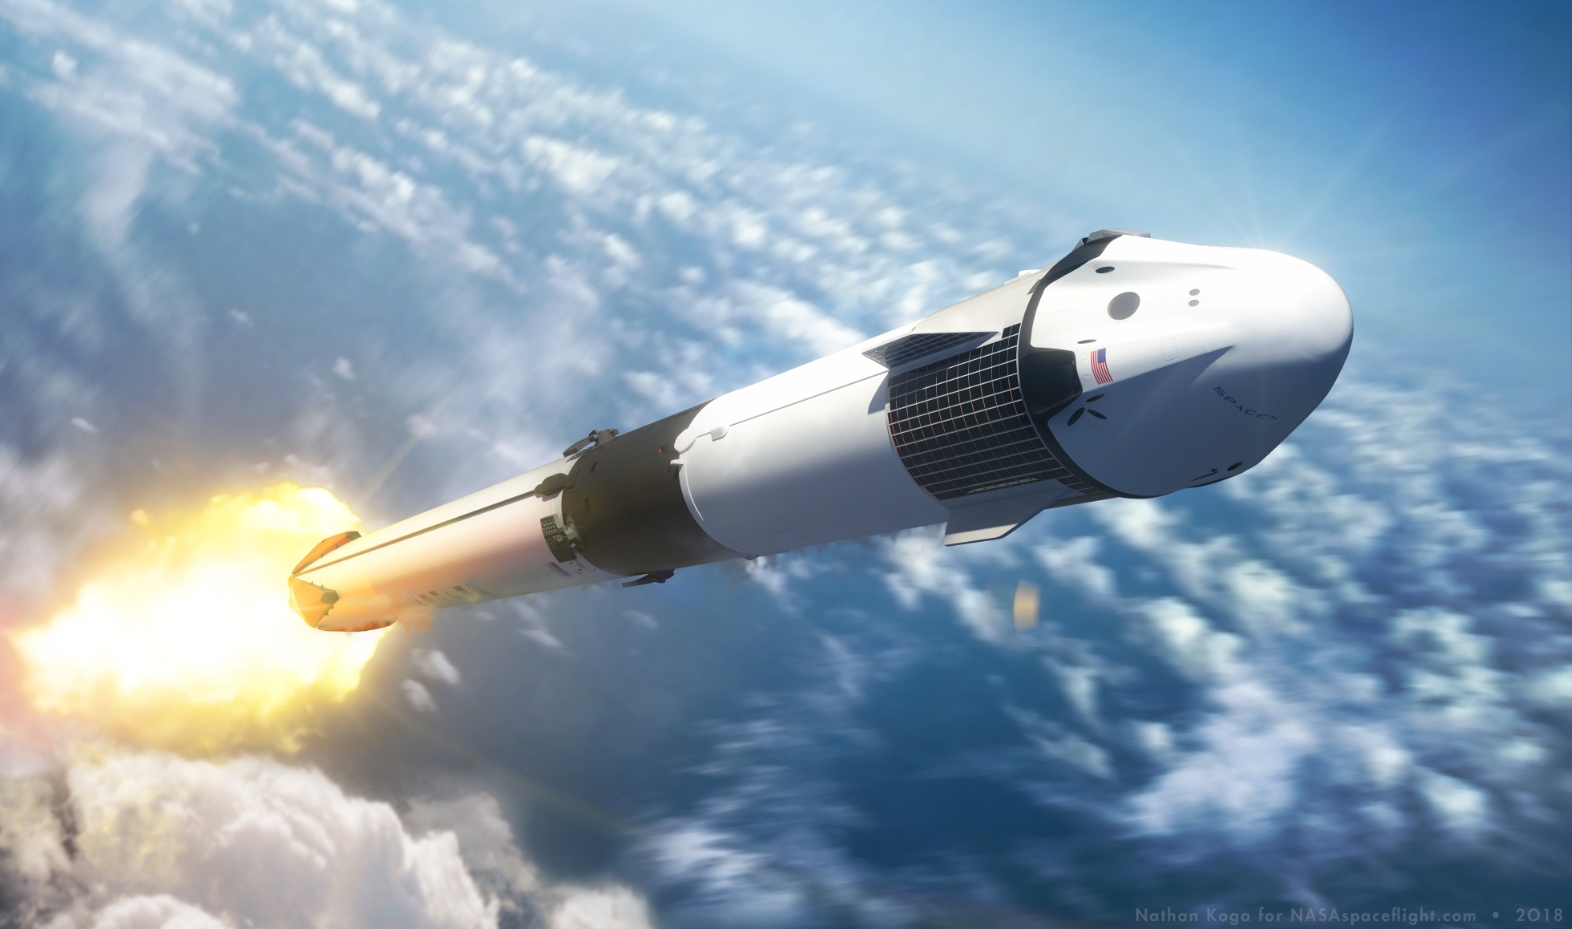 La NASA pronta ad un passo avanti verso un nuovo lancio con umani nello spazio